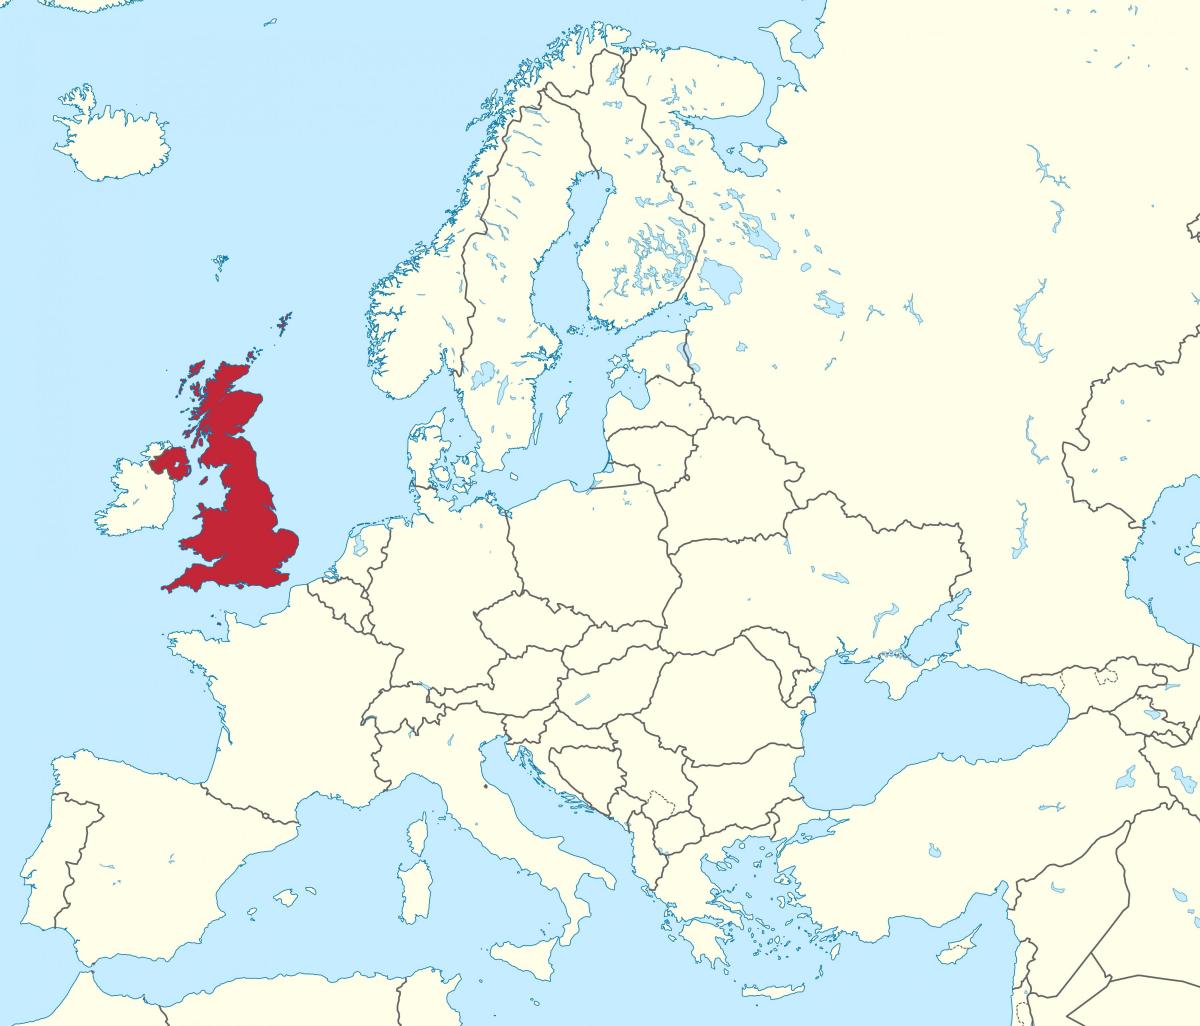 Regno Unito (UK) posizione sulla mappa dell'Europa